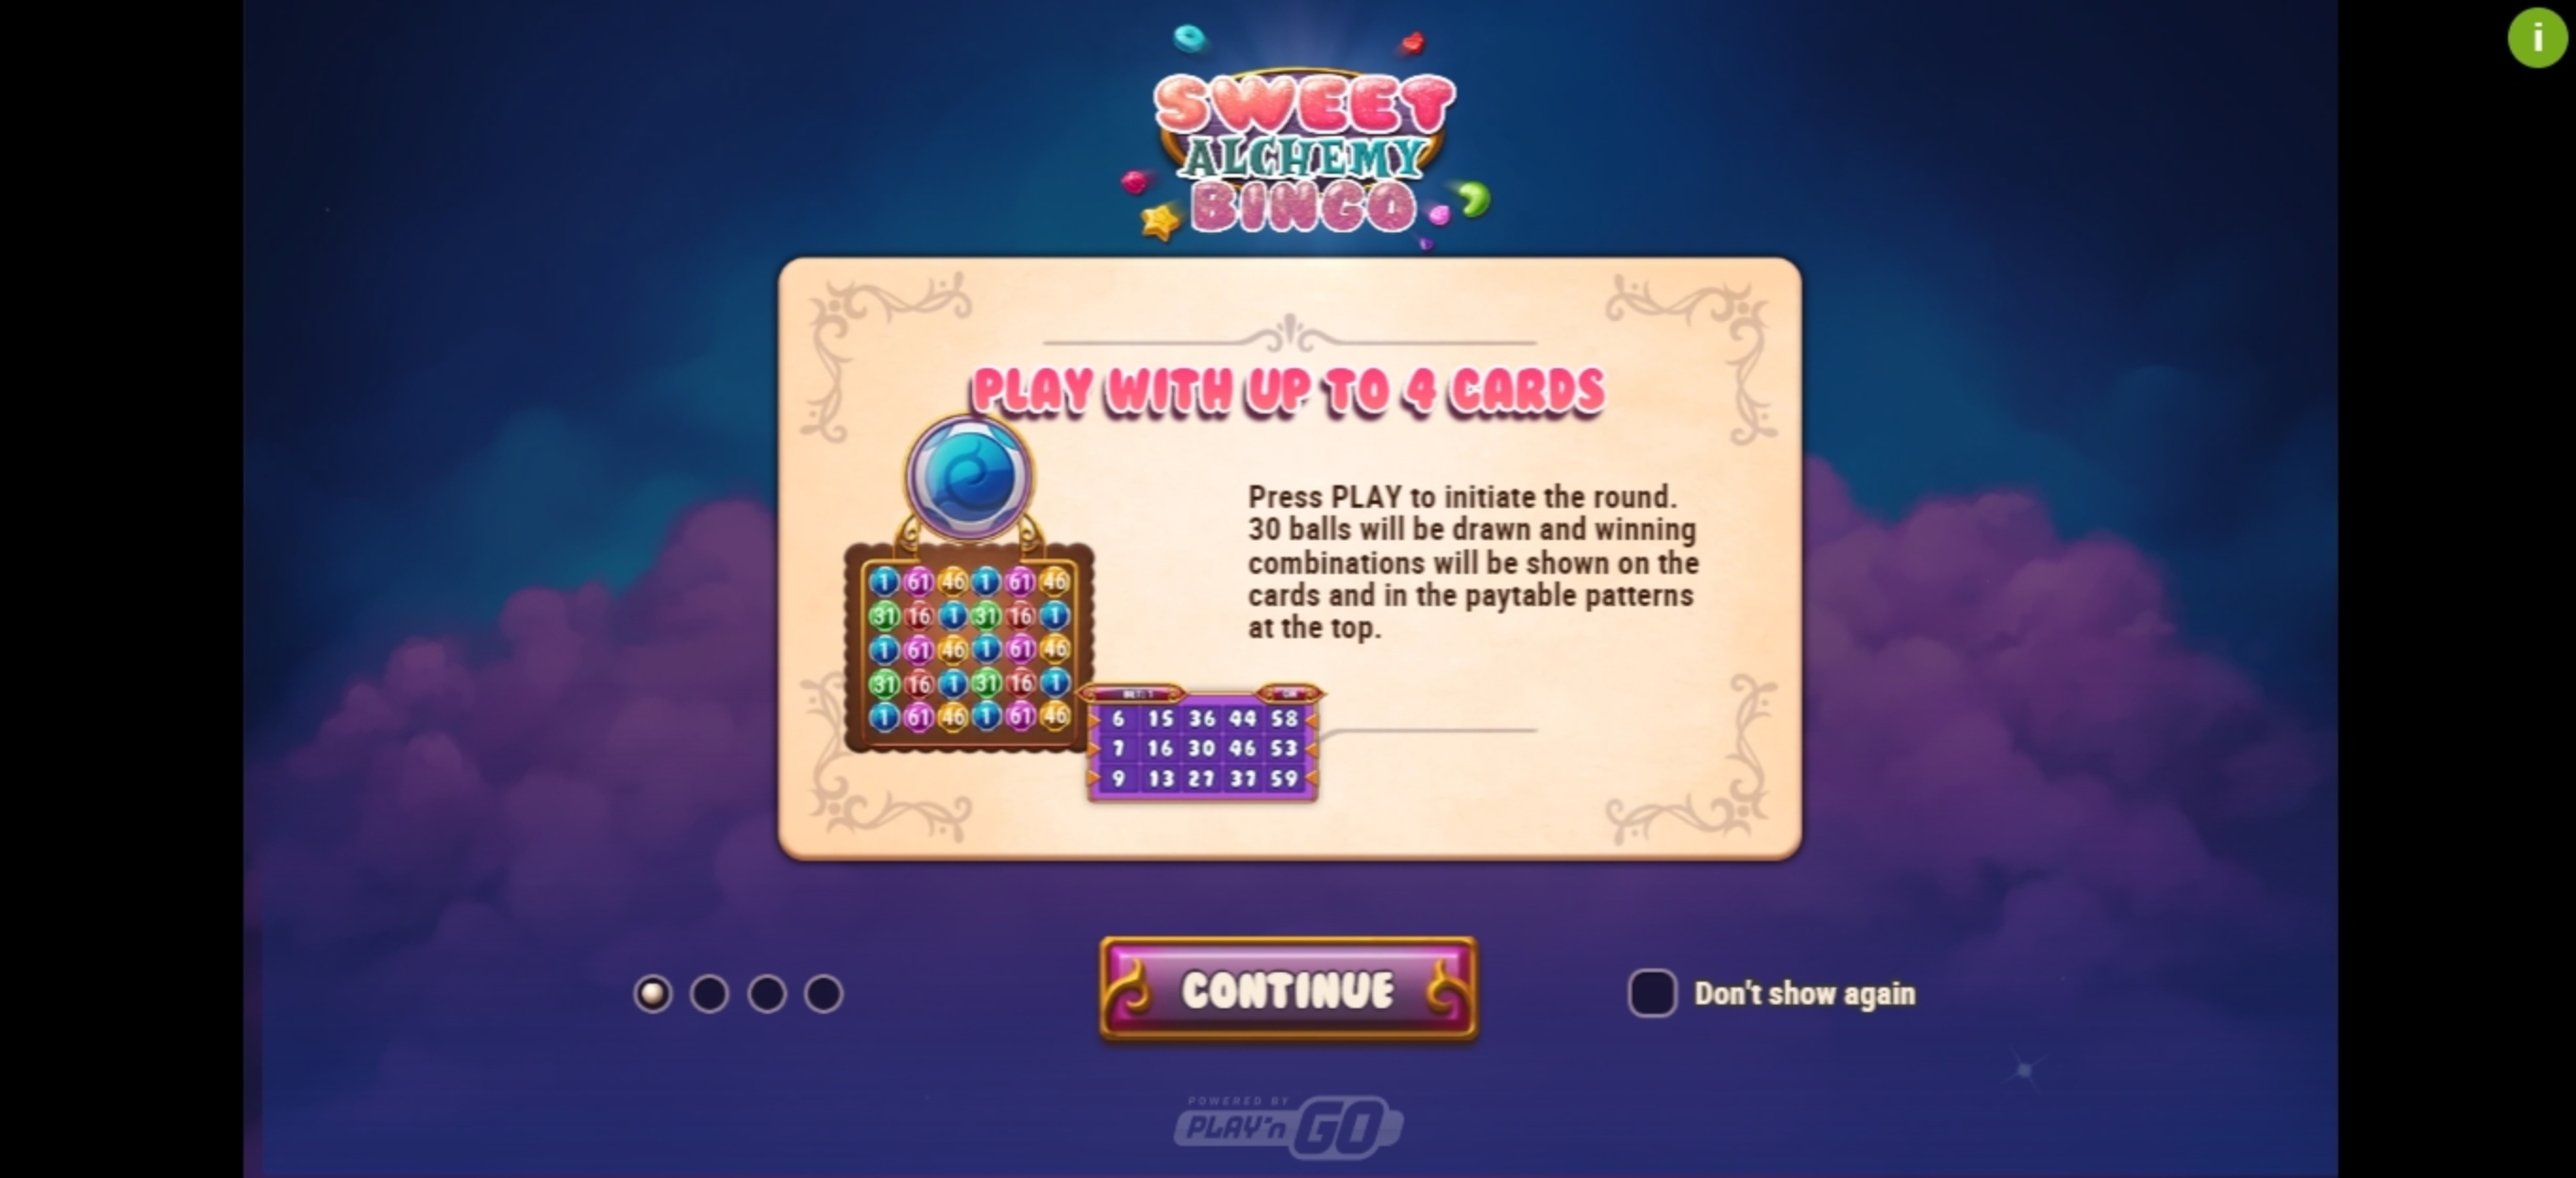 Play Sweet Alchemy Bingo Free Casino Slot Game by Playn GO